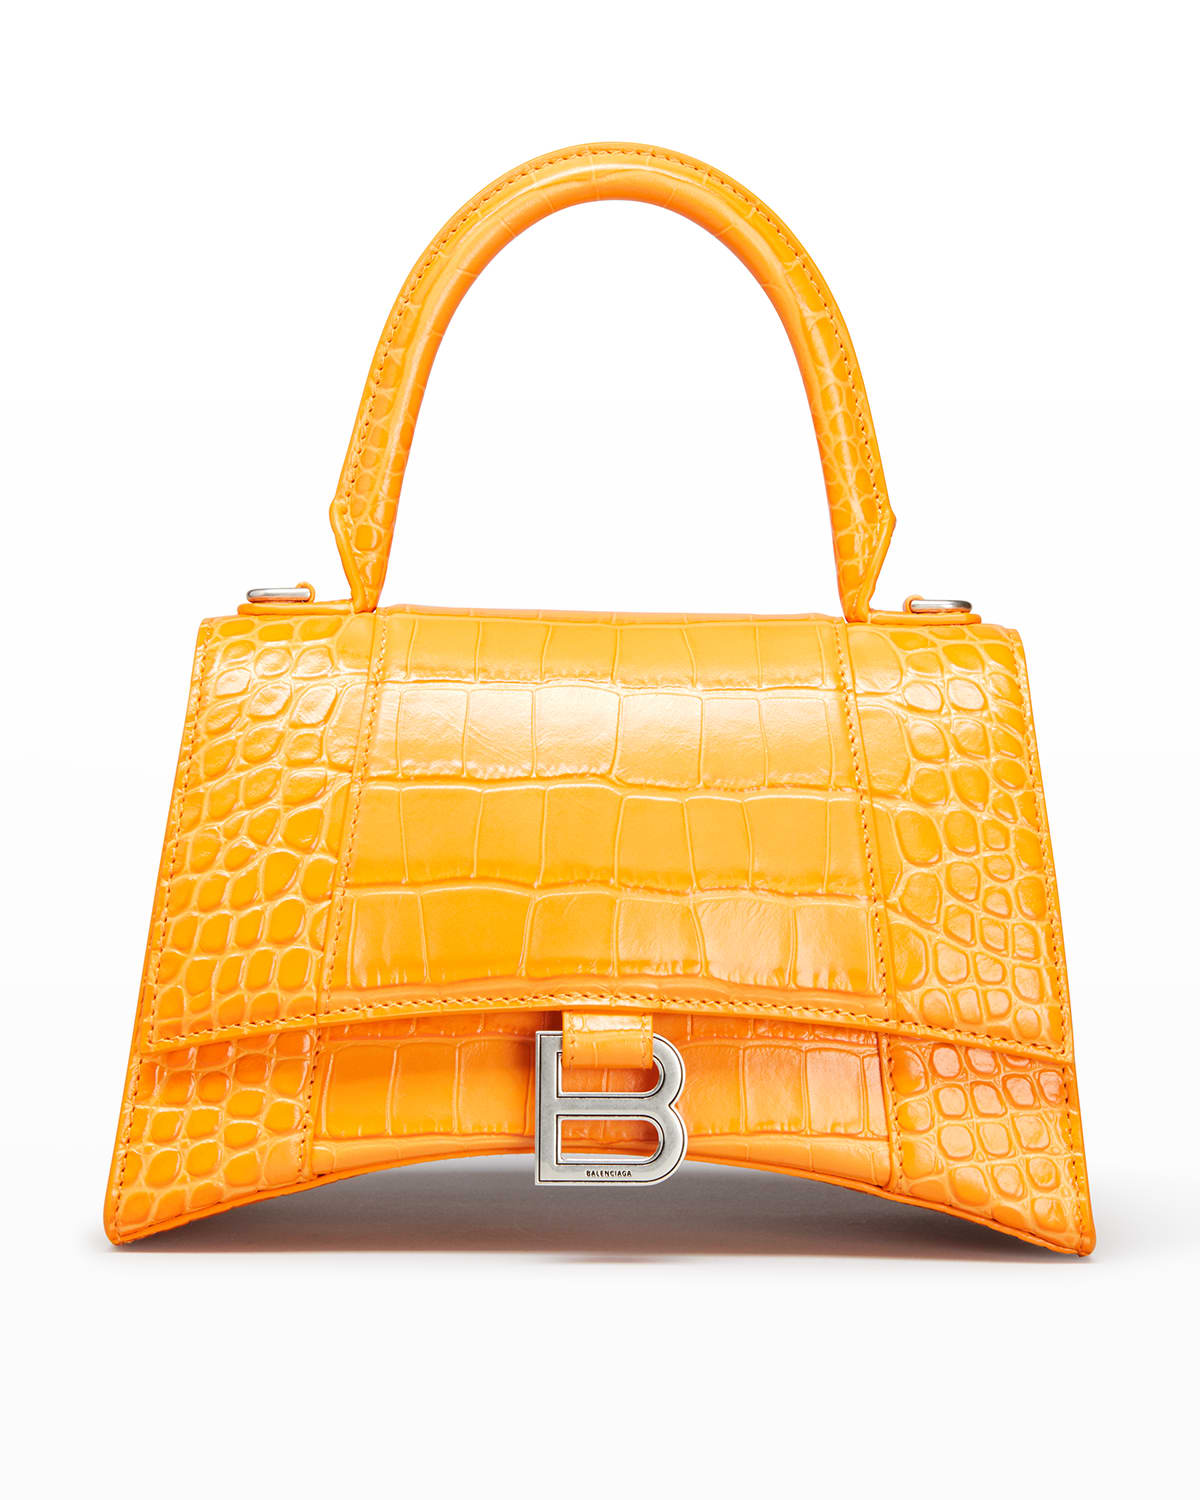 Balenciaga Hourglass Small Shiny Croc-Embossed Top-Handle Bag